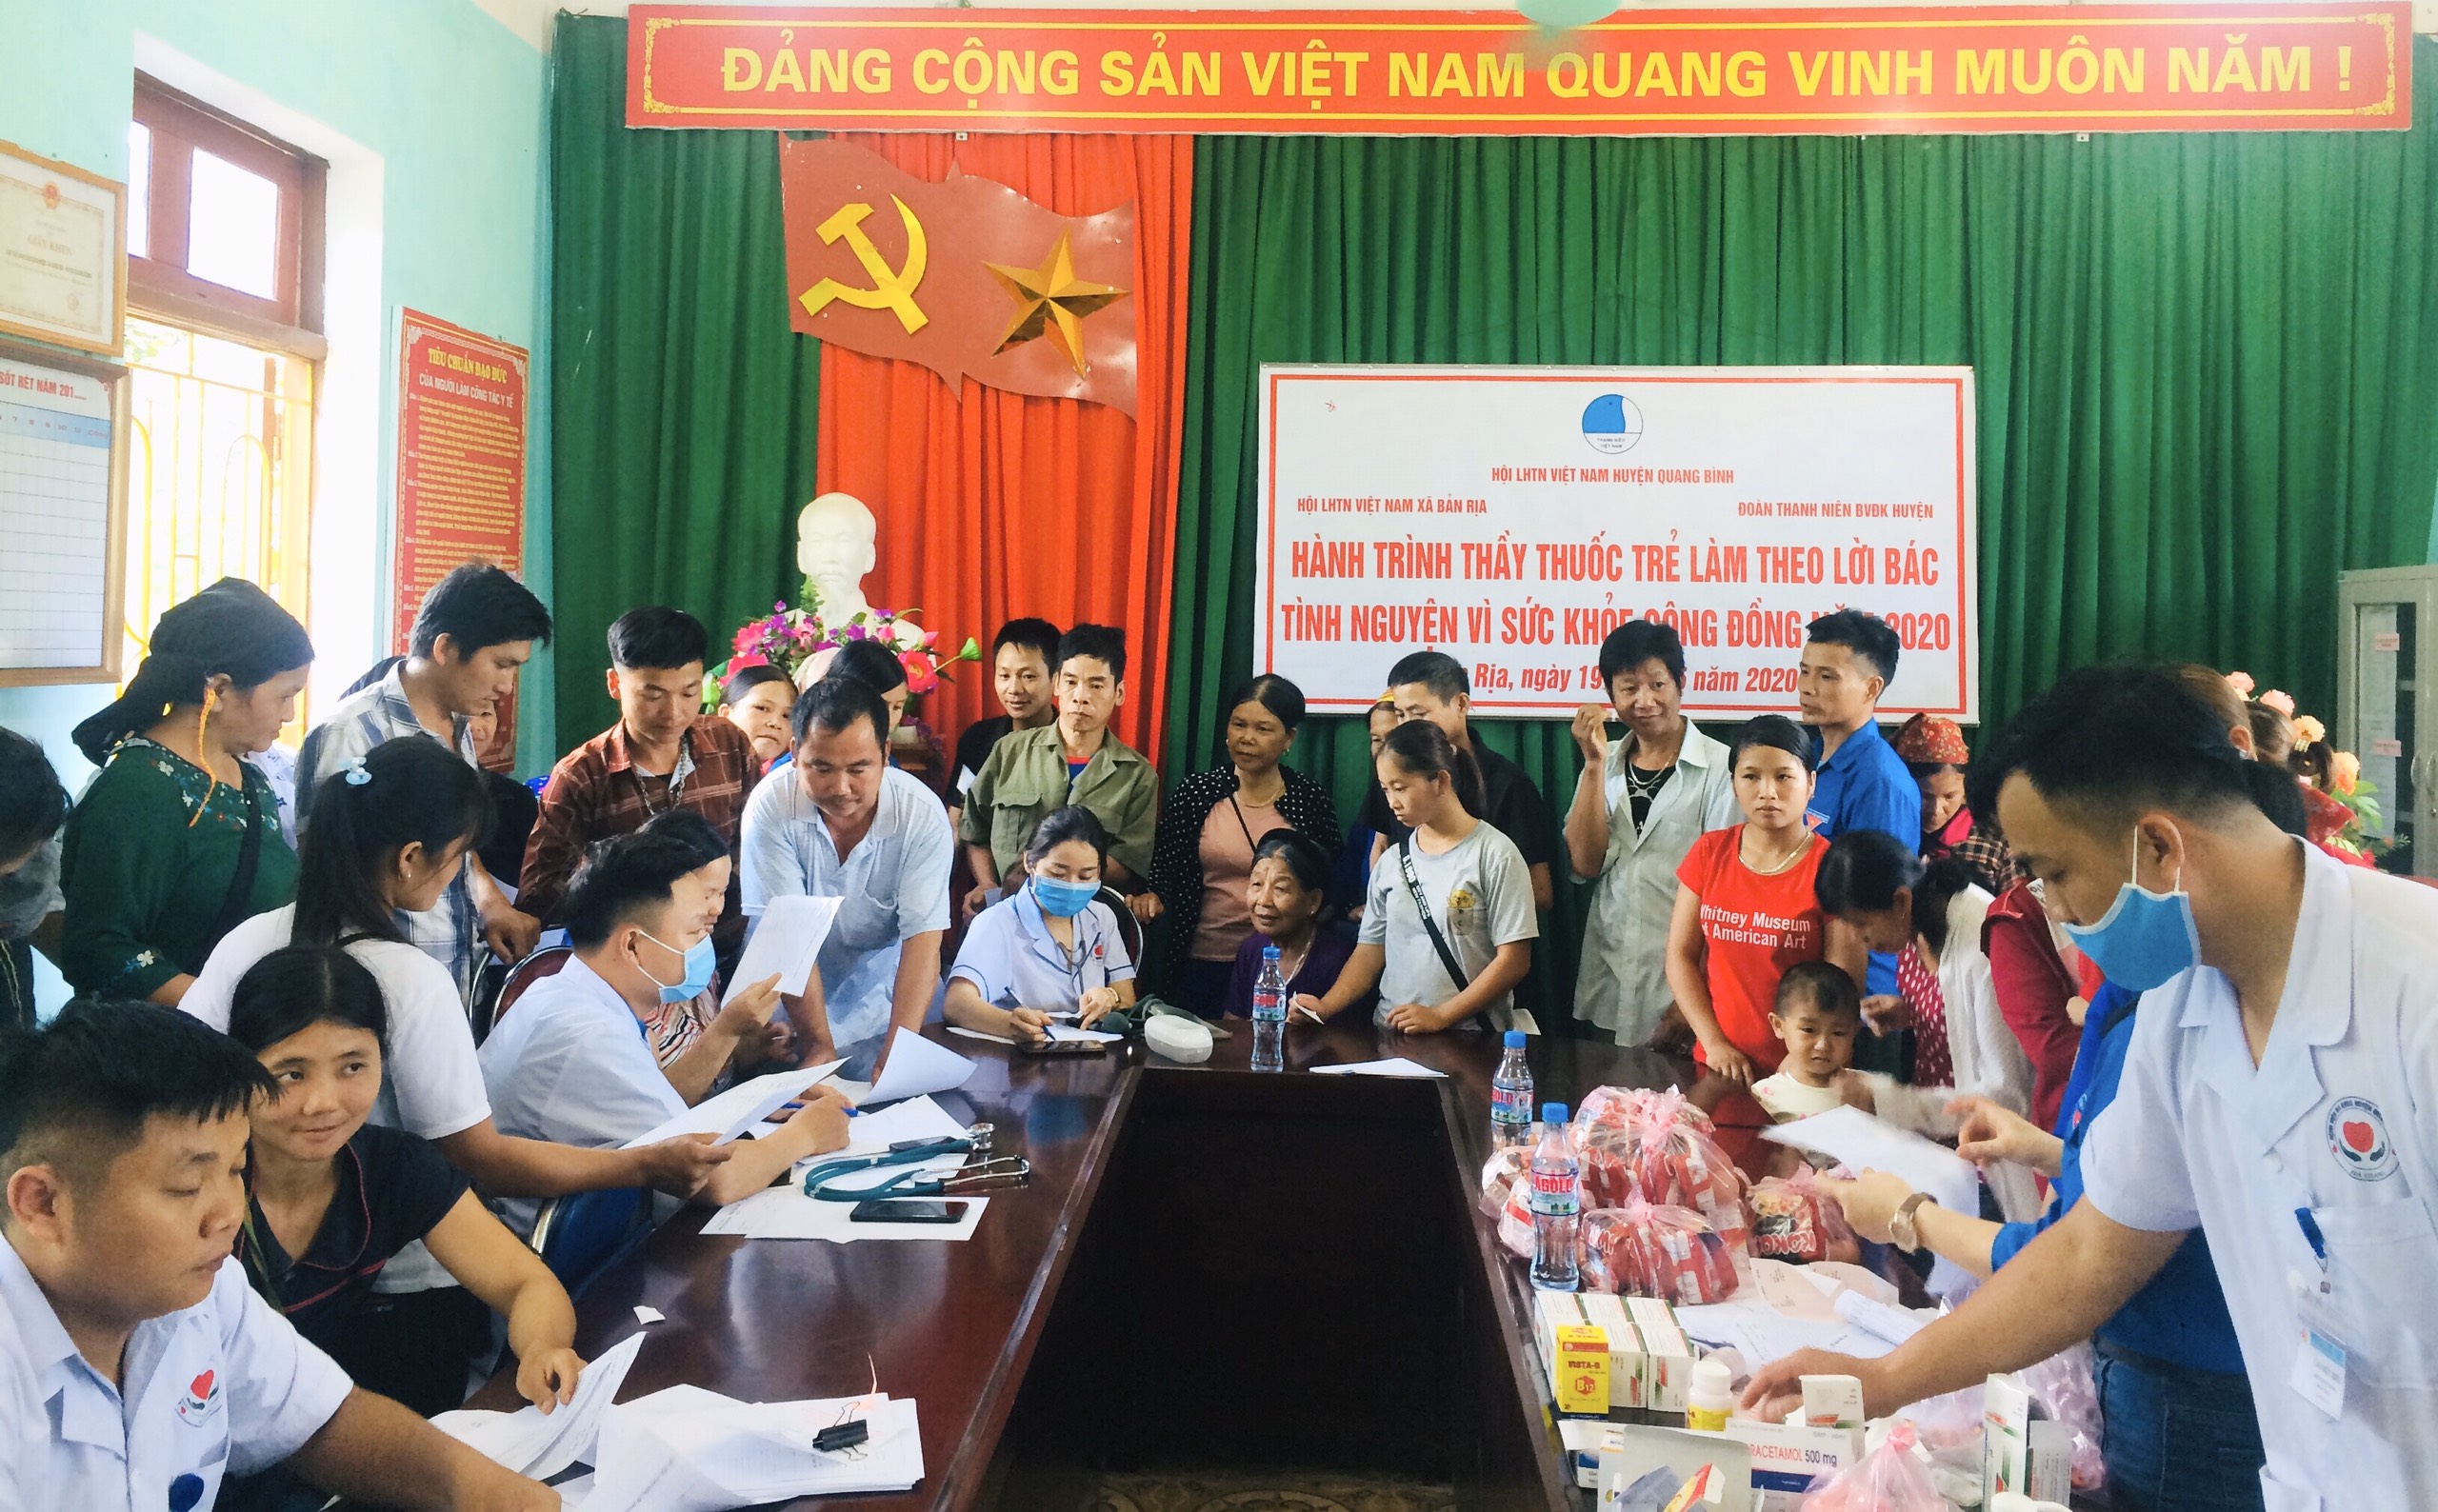 Đoàn Thanh niên các đơn vị y tế huyện Quang Bình, Quản Bạ và Hoàng Su Phì thực hiện hành trình “Thày thuốc trẻ làm theo lời Bác” tại các xã